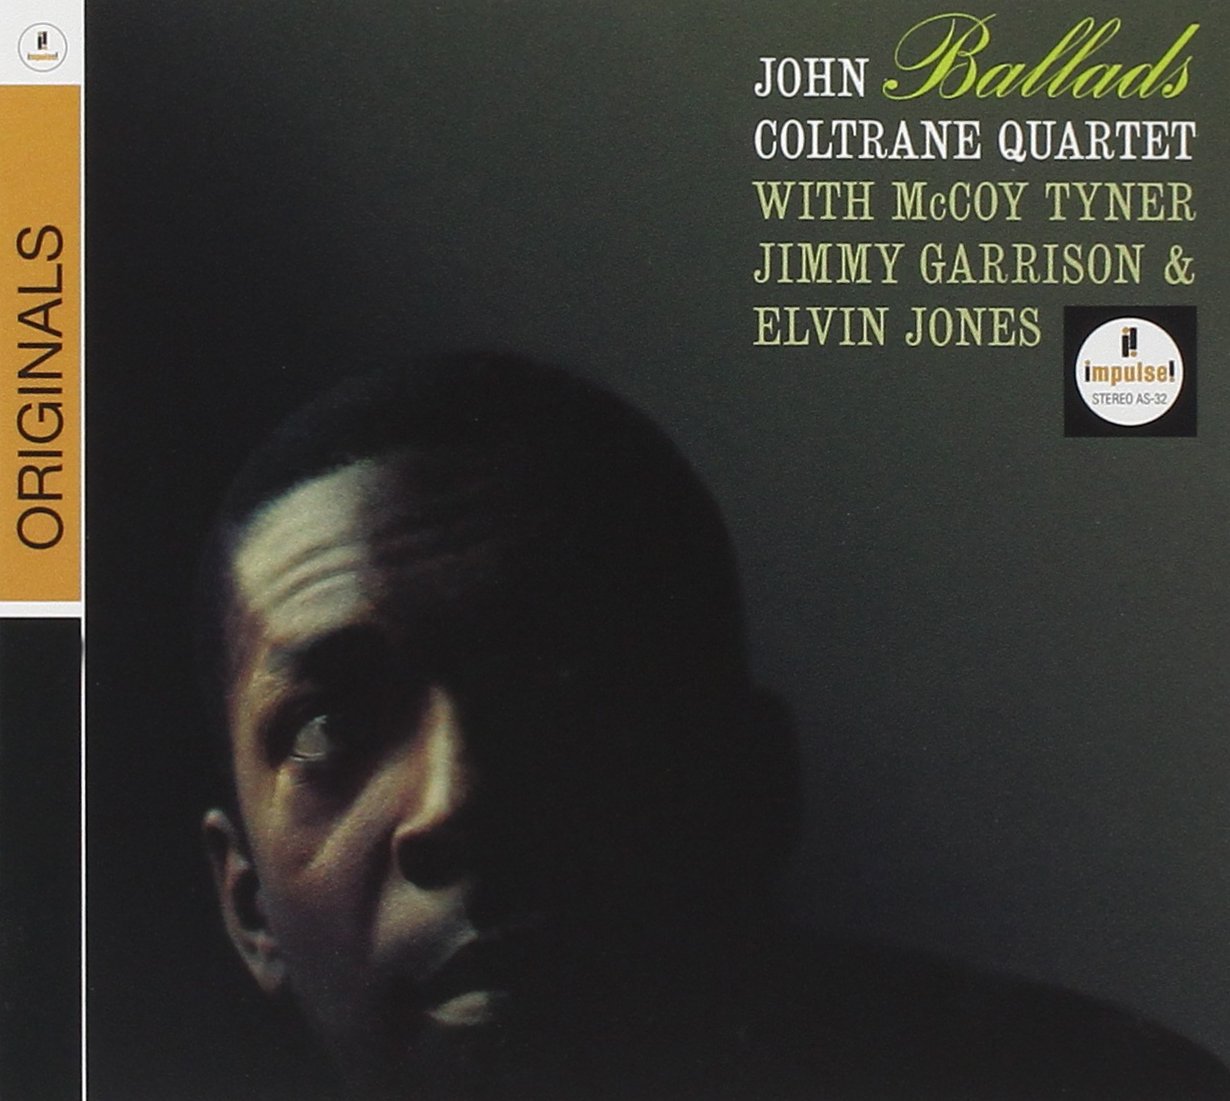 John Coltrane - Ballads (1962/2008) [HDTracks FLAC 24bit/96kHz]